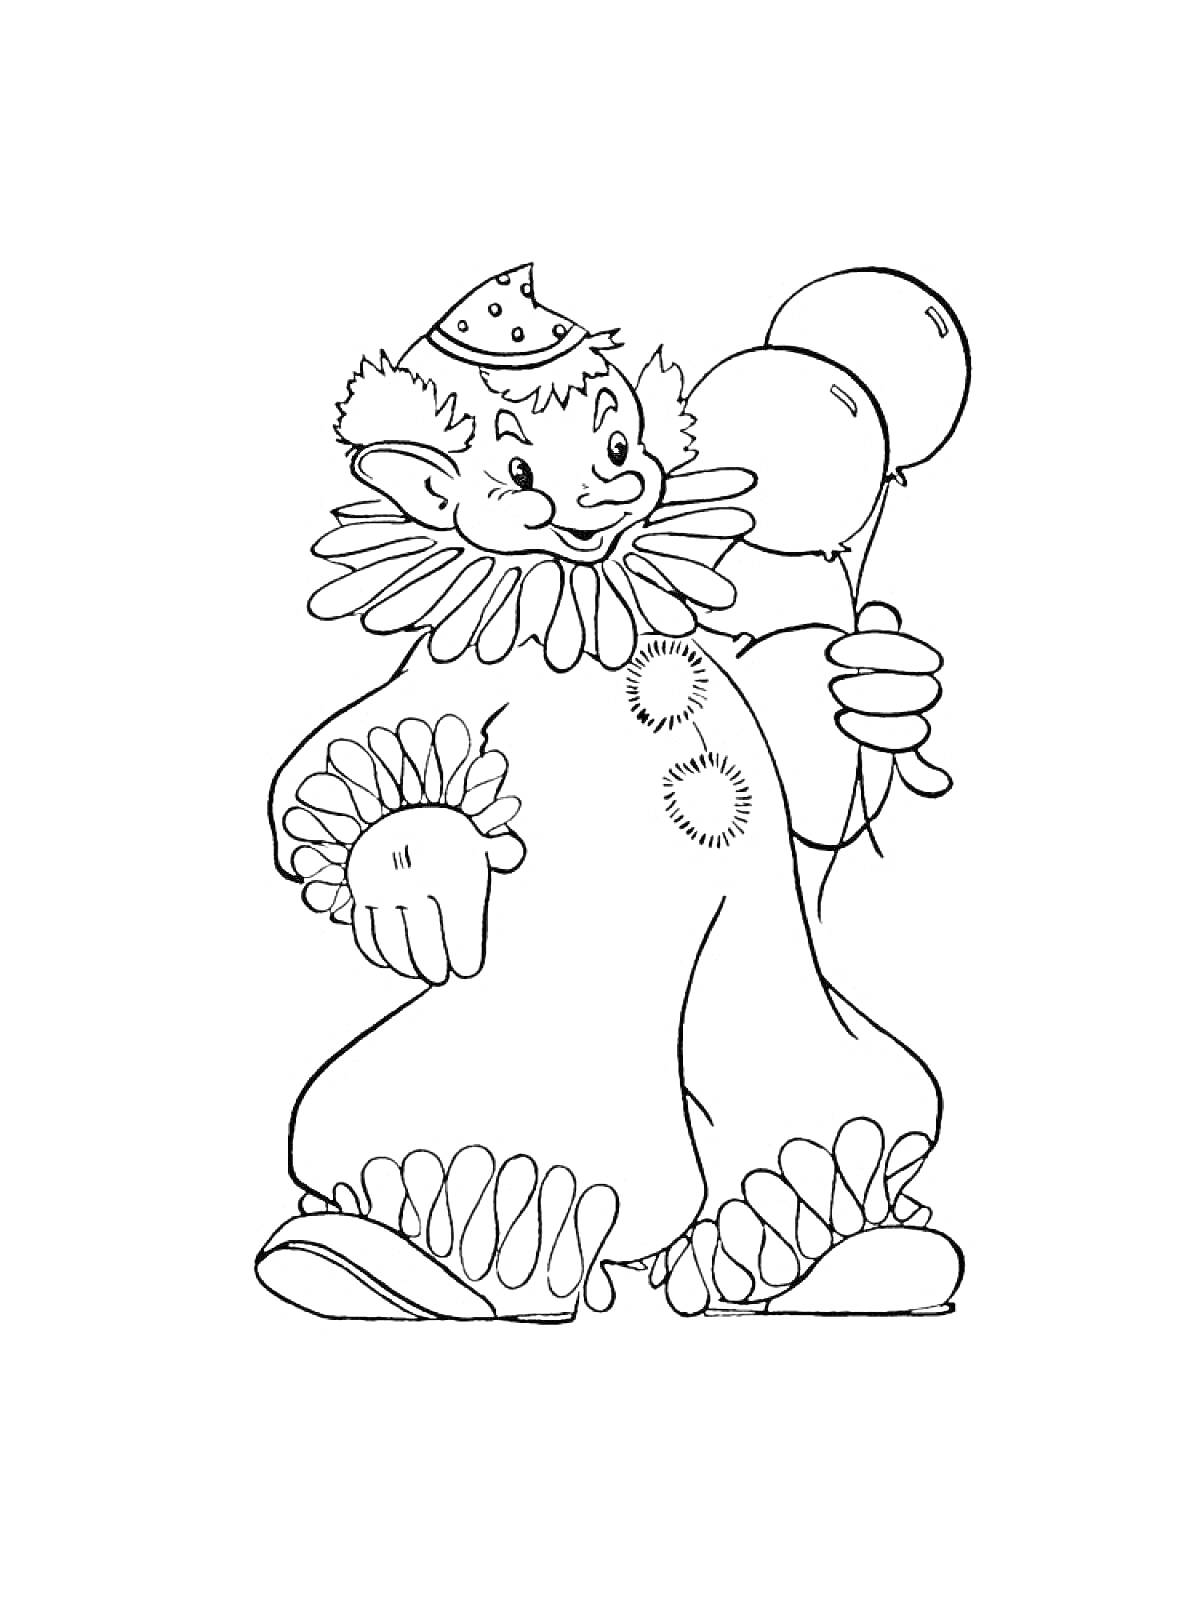 Раскраска Клоун с шарами, в шляпе и костюме с рюшами